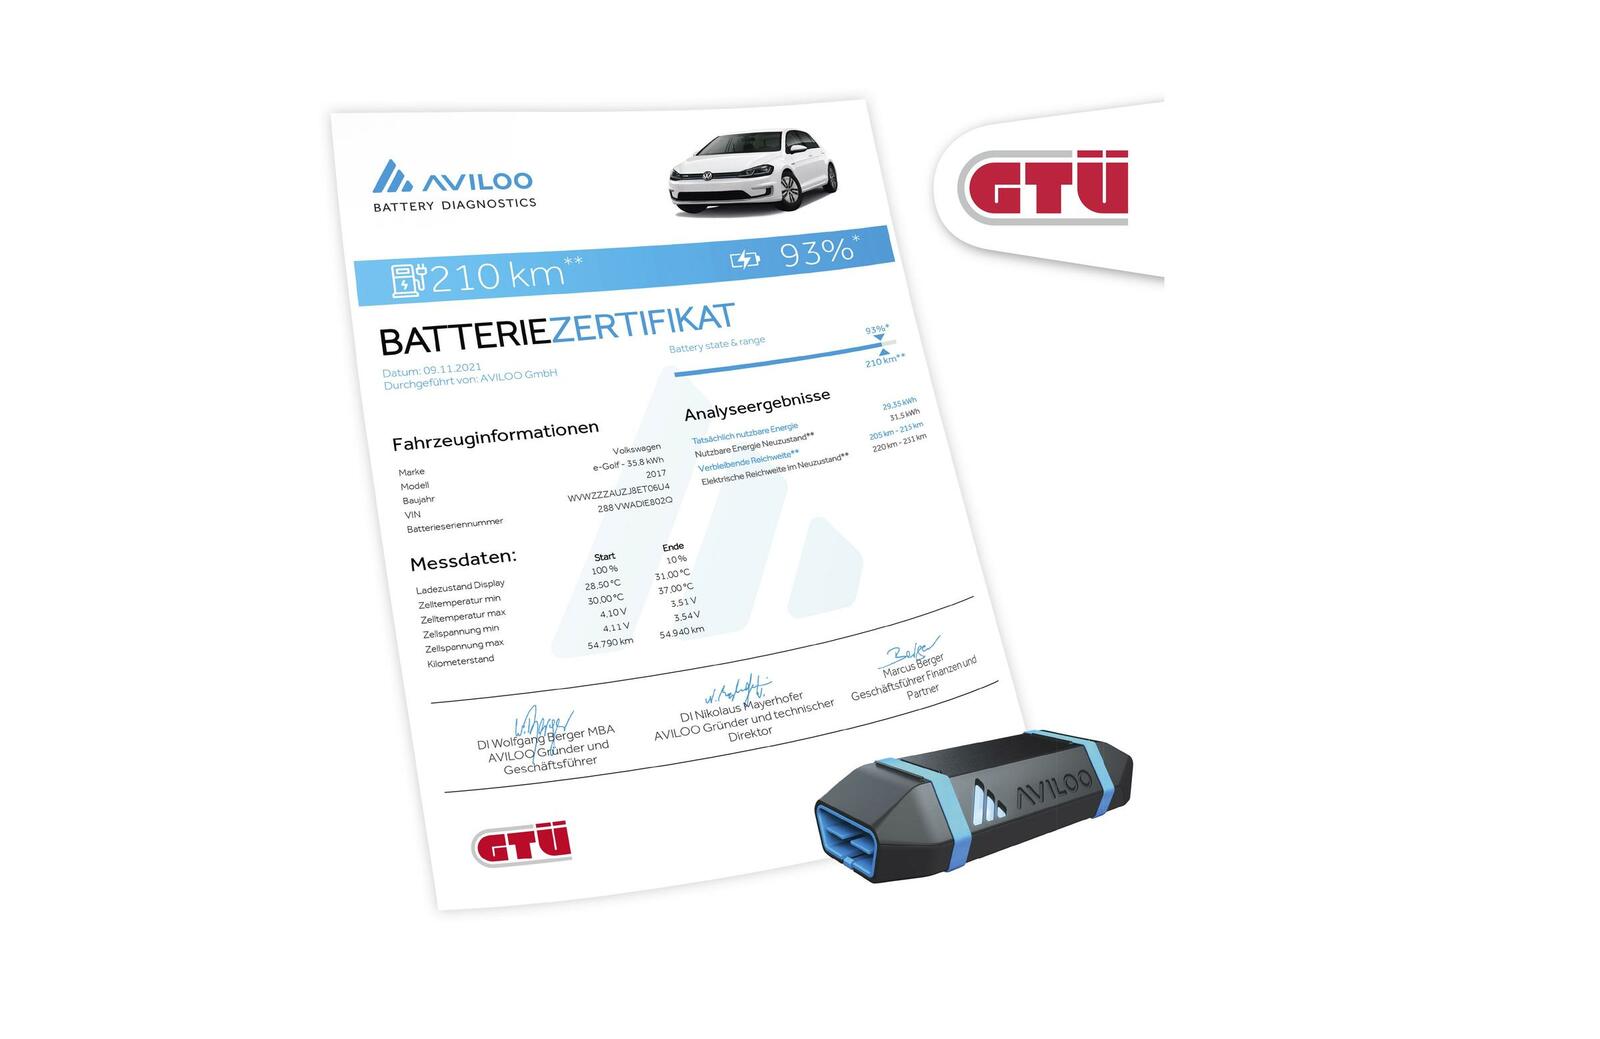 Batteriezertifikat der AVILOO Battery Diagnostics GmbH mit Auflistung der erfassten Messdaten und Analyseergebnisse